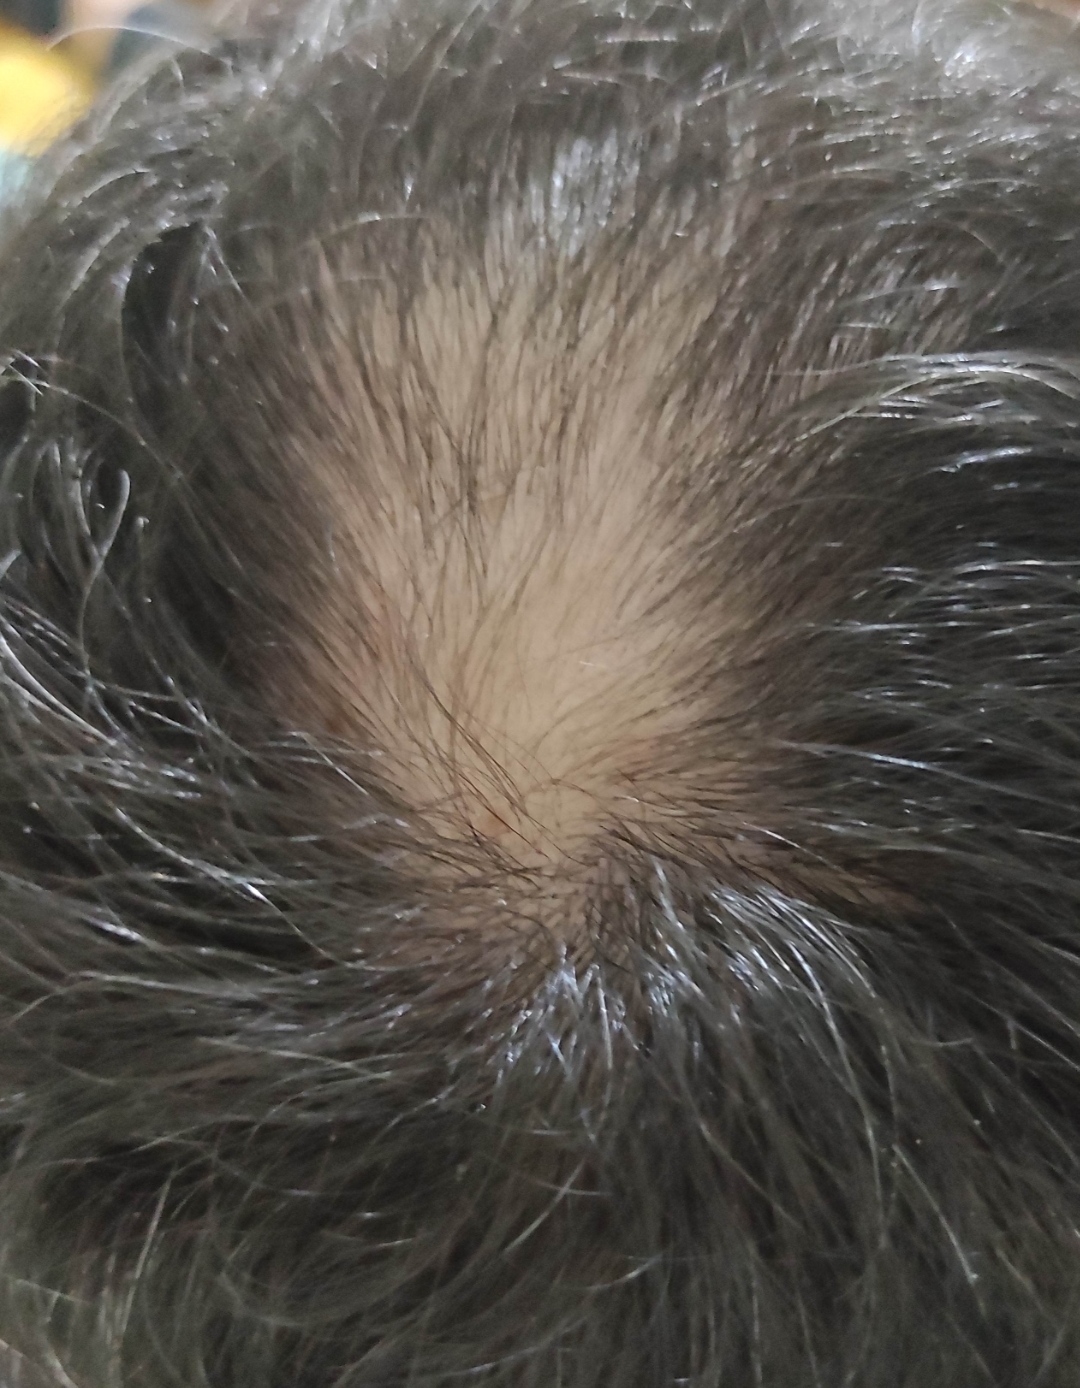 Yanlardan açılan saçlar için çözüm - Saç Tedavisi Forum Sarımsak Yağı Kullananlar Yorumları